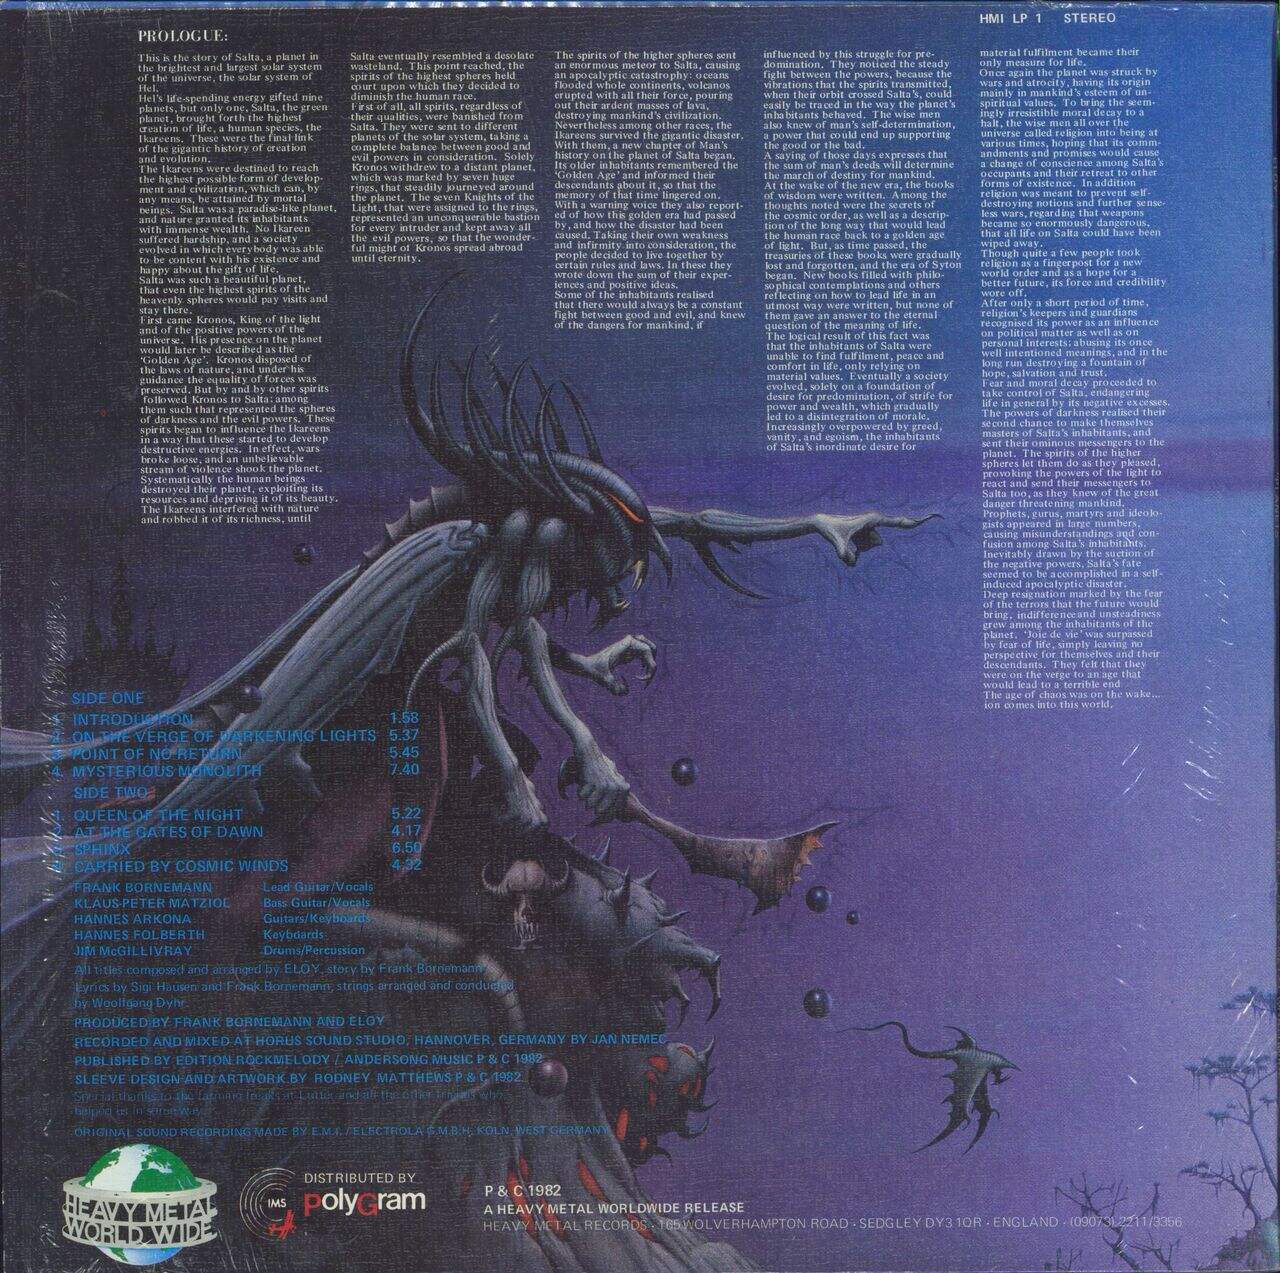 Eloy Planets - 1st + Blue Inner in shrink UK Vinyl LP